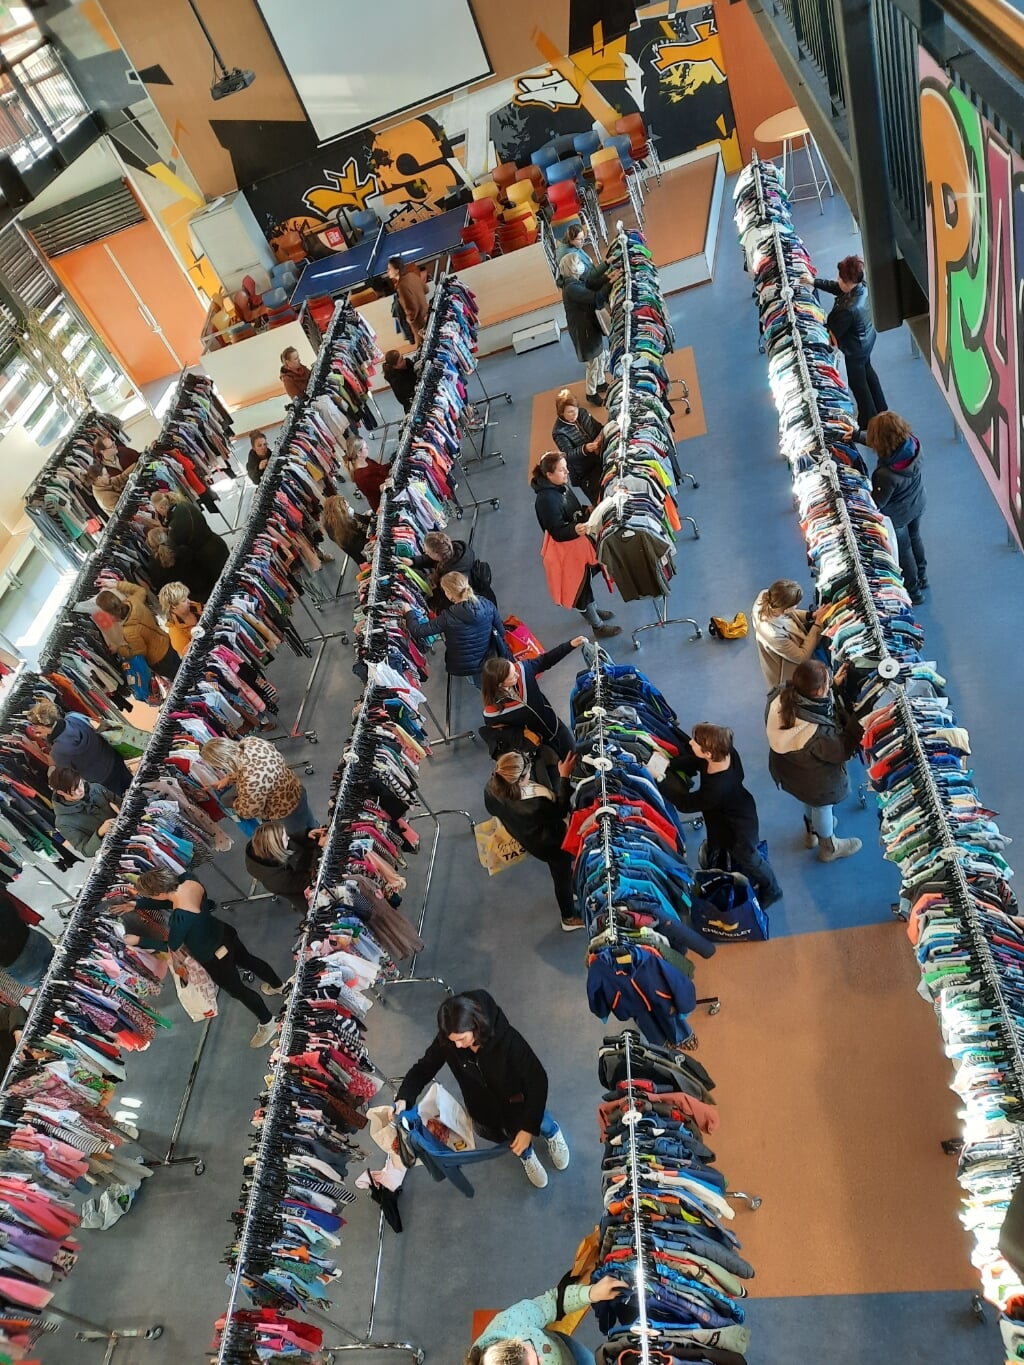 Zaal Westeraam tijdens verkoopochtend. (foto: Esther Rutjes)